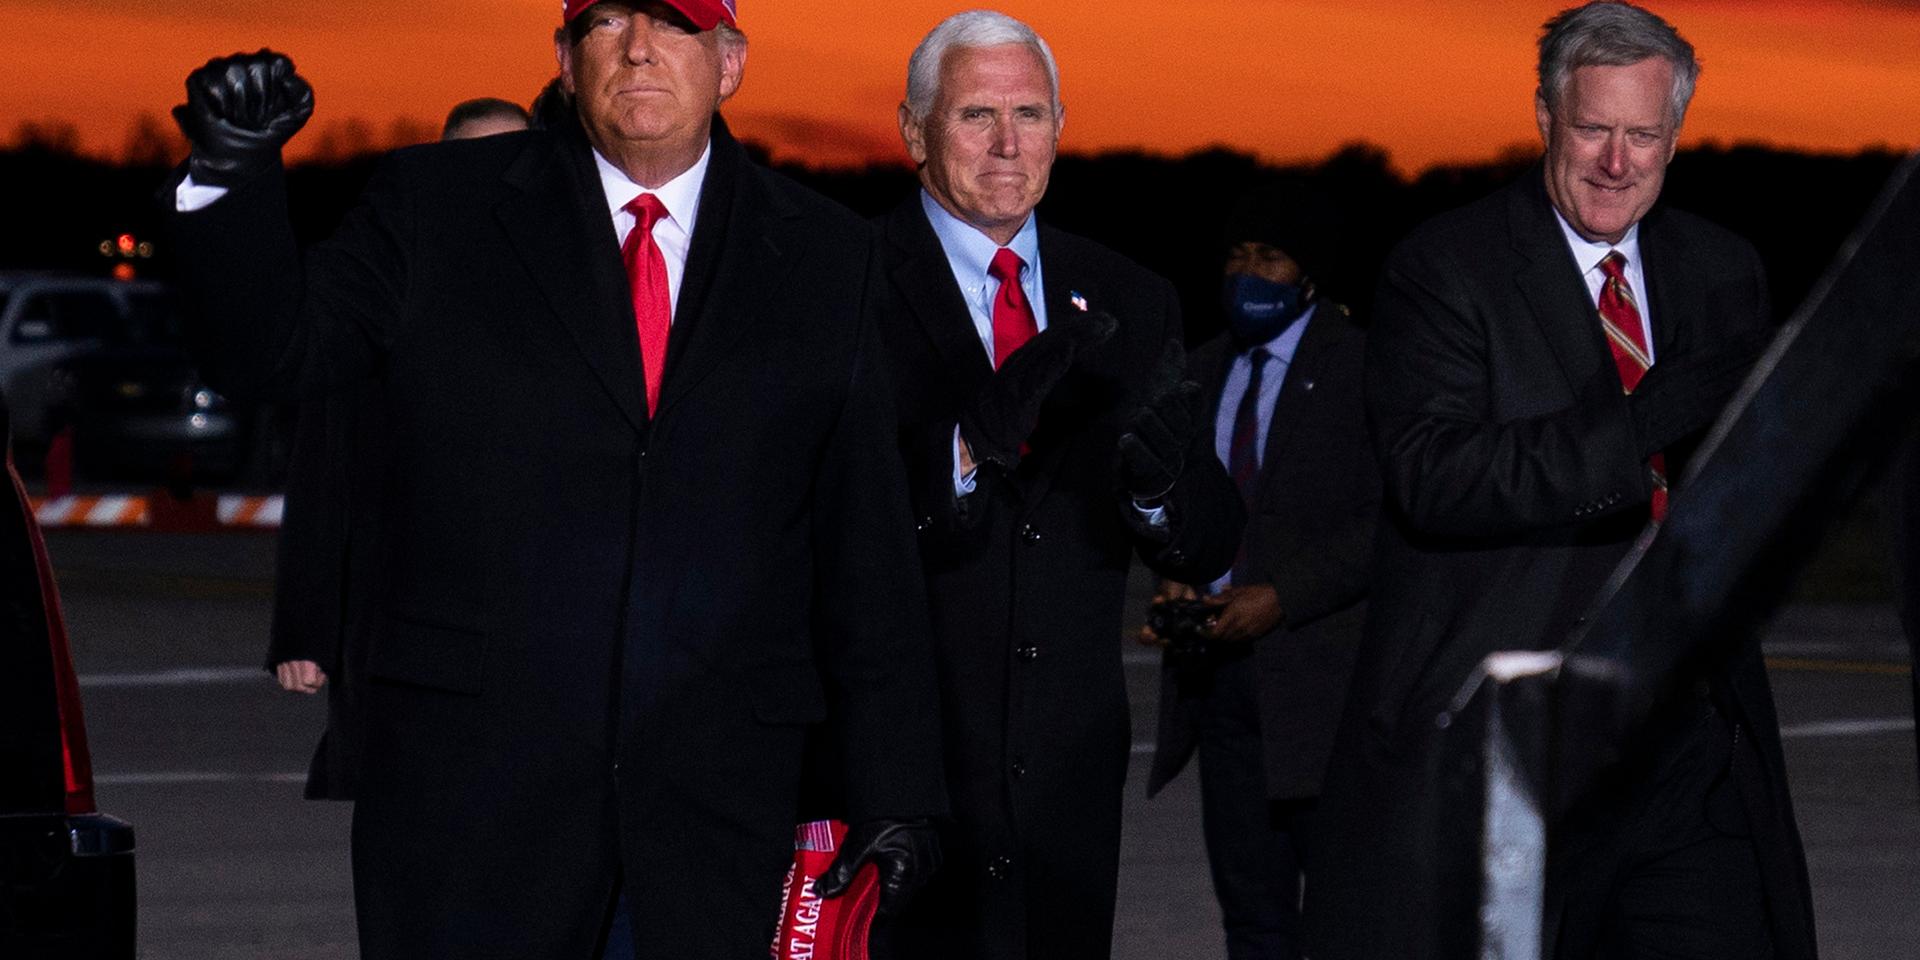 Tidigare presidenten Donald Trump, vicepresidenten Mike Pence och Mark Meadows anländer till ett kampanjmöte i Michigan, november 2020.